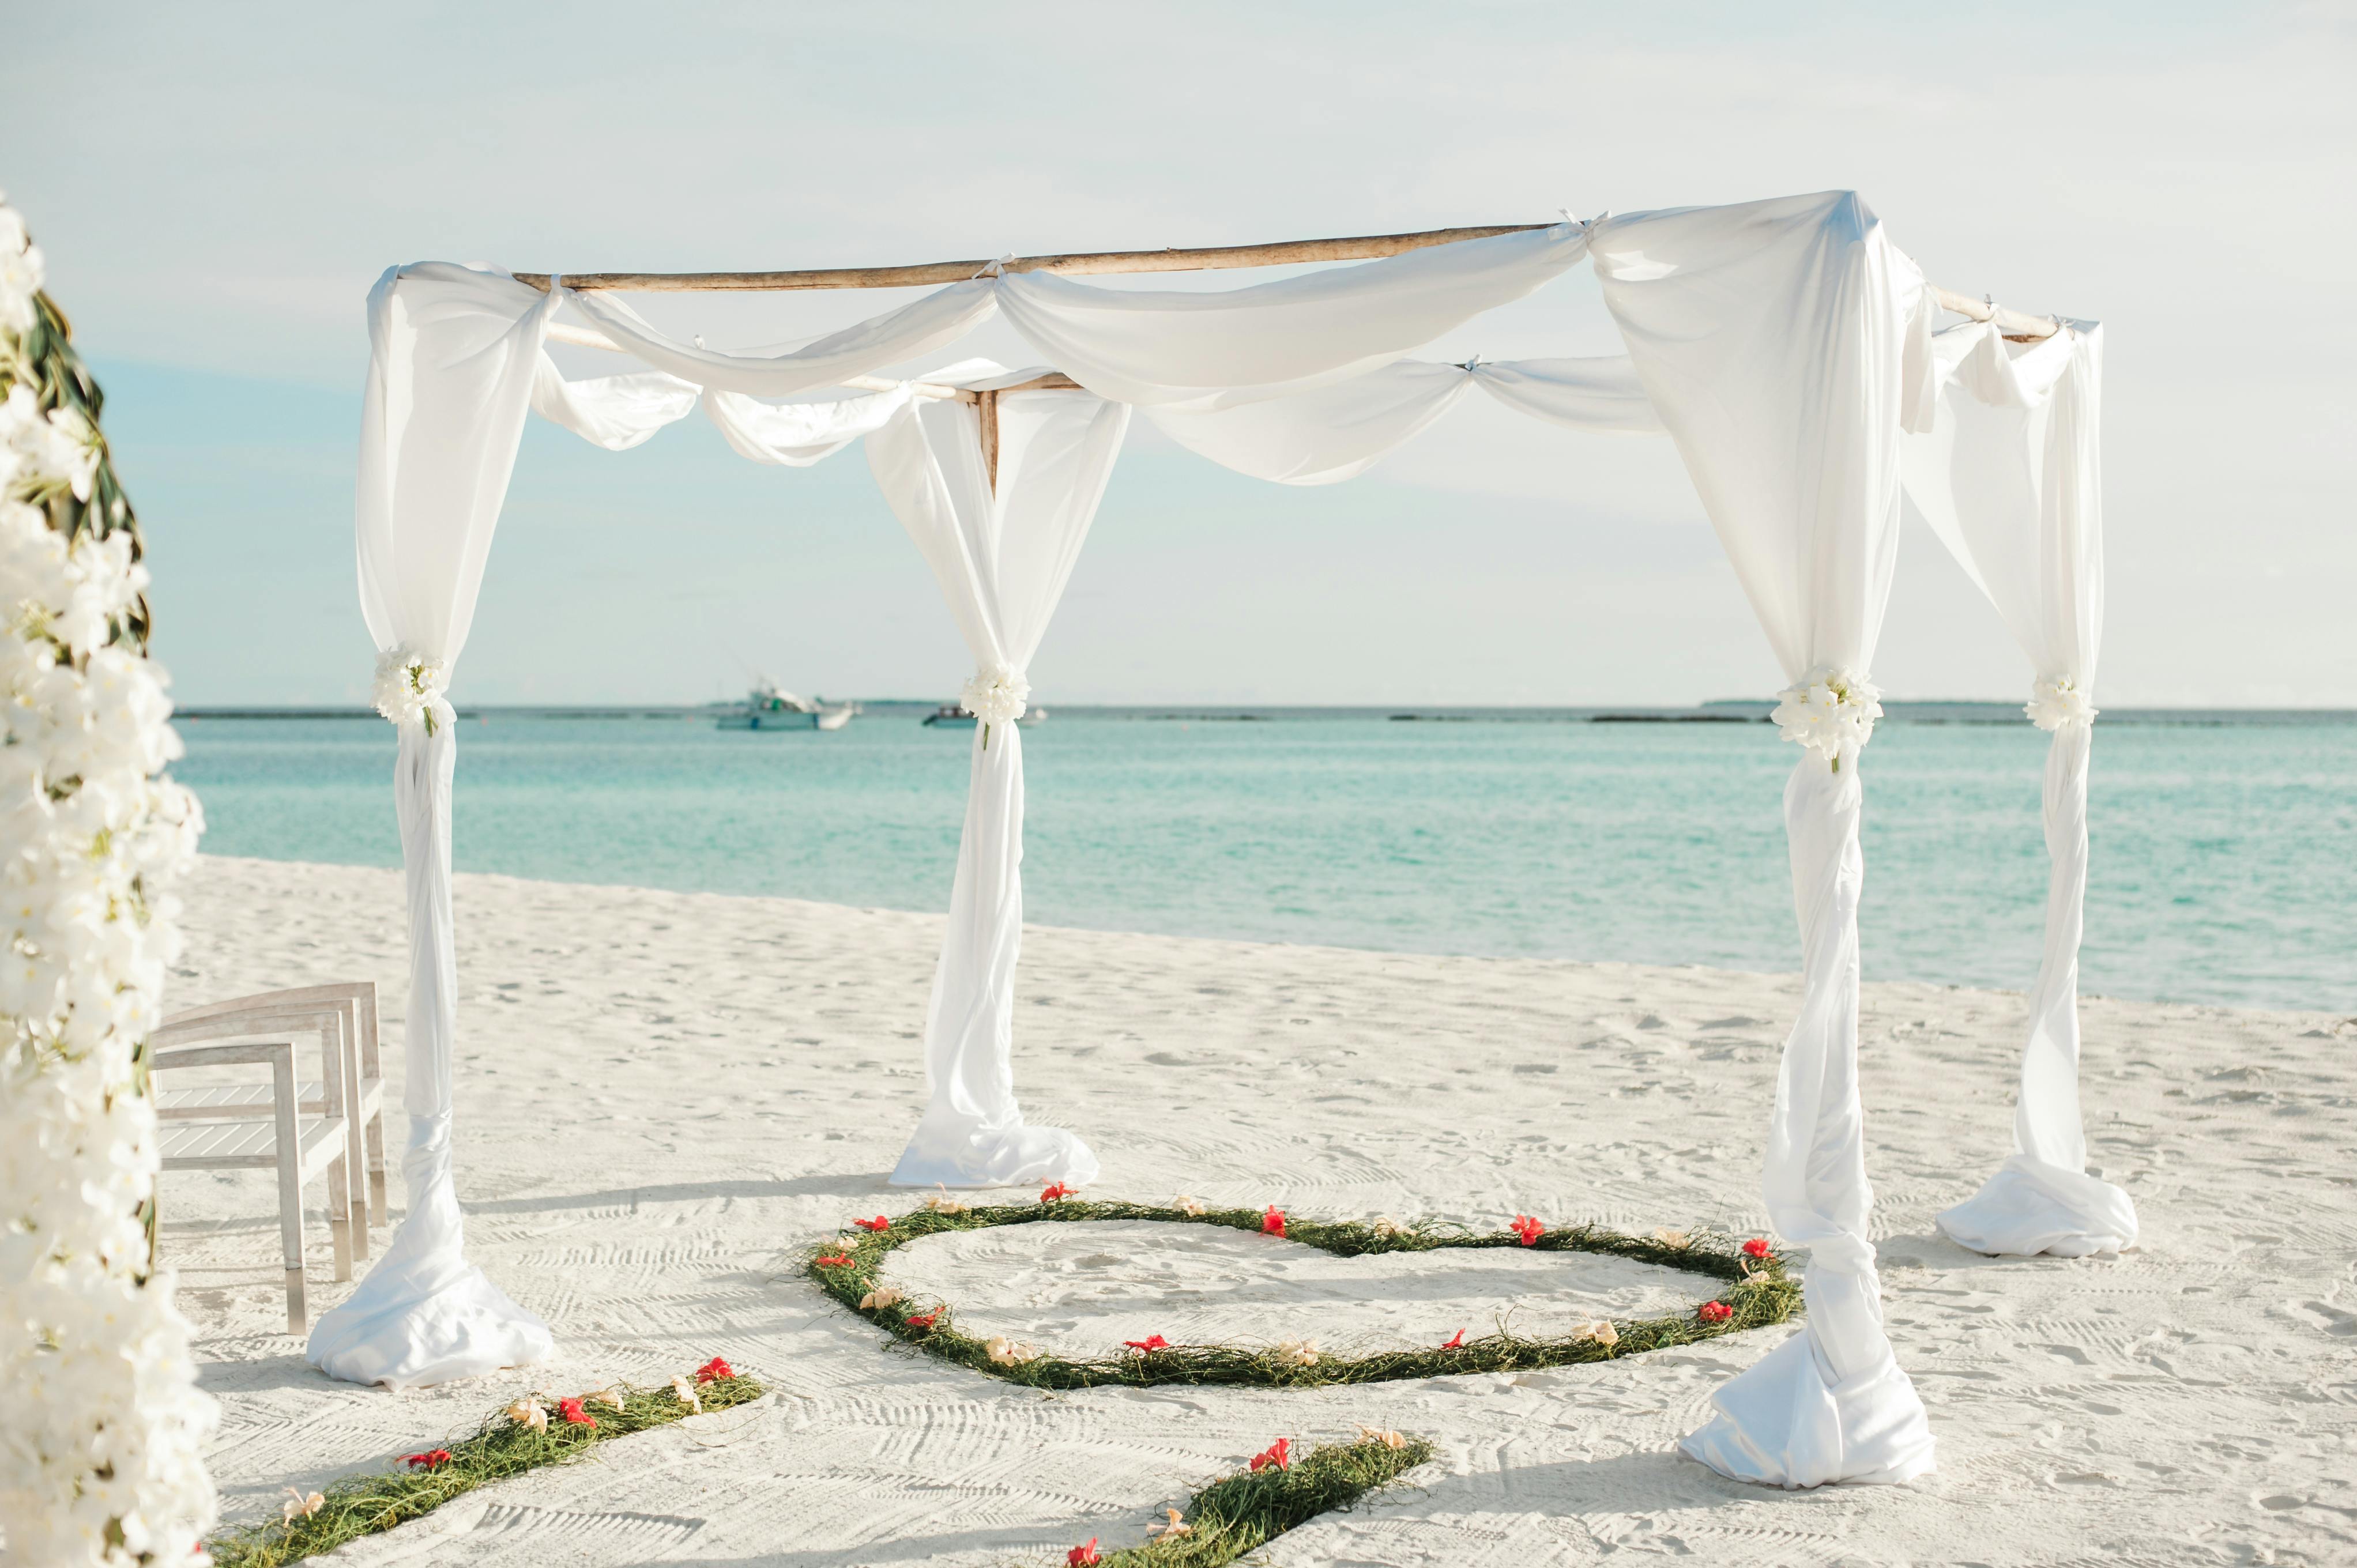 Cùng chiêm ngưỡng hình ảnh đám cưới trên bãi biển đầy lãng mạn, với những bức hình ghi lại những khoảnh khắc cười tươi, hạnh phúc của đôi uyên ương trên cát trắng, sóng vỗ. Một ngày trọng đại sẽ trở nên đặc biệt hơn khi bạn lưu giữ những khoảnh khắc ngọt ngào này với đám cưới trên bãi biển.